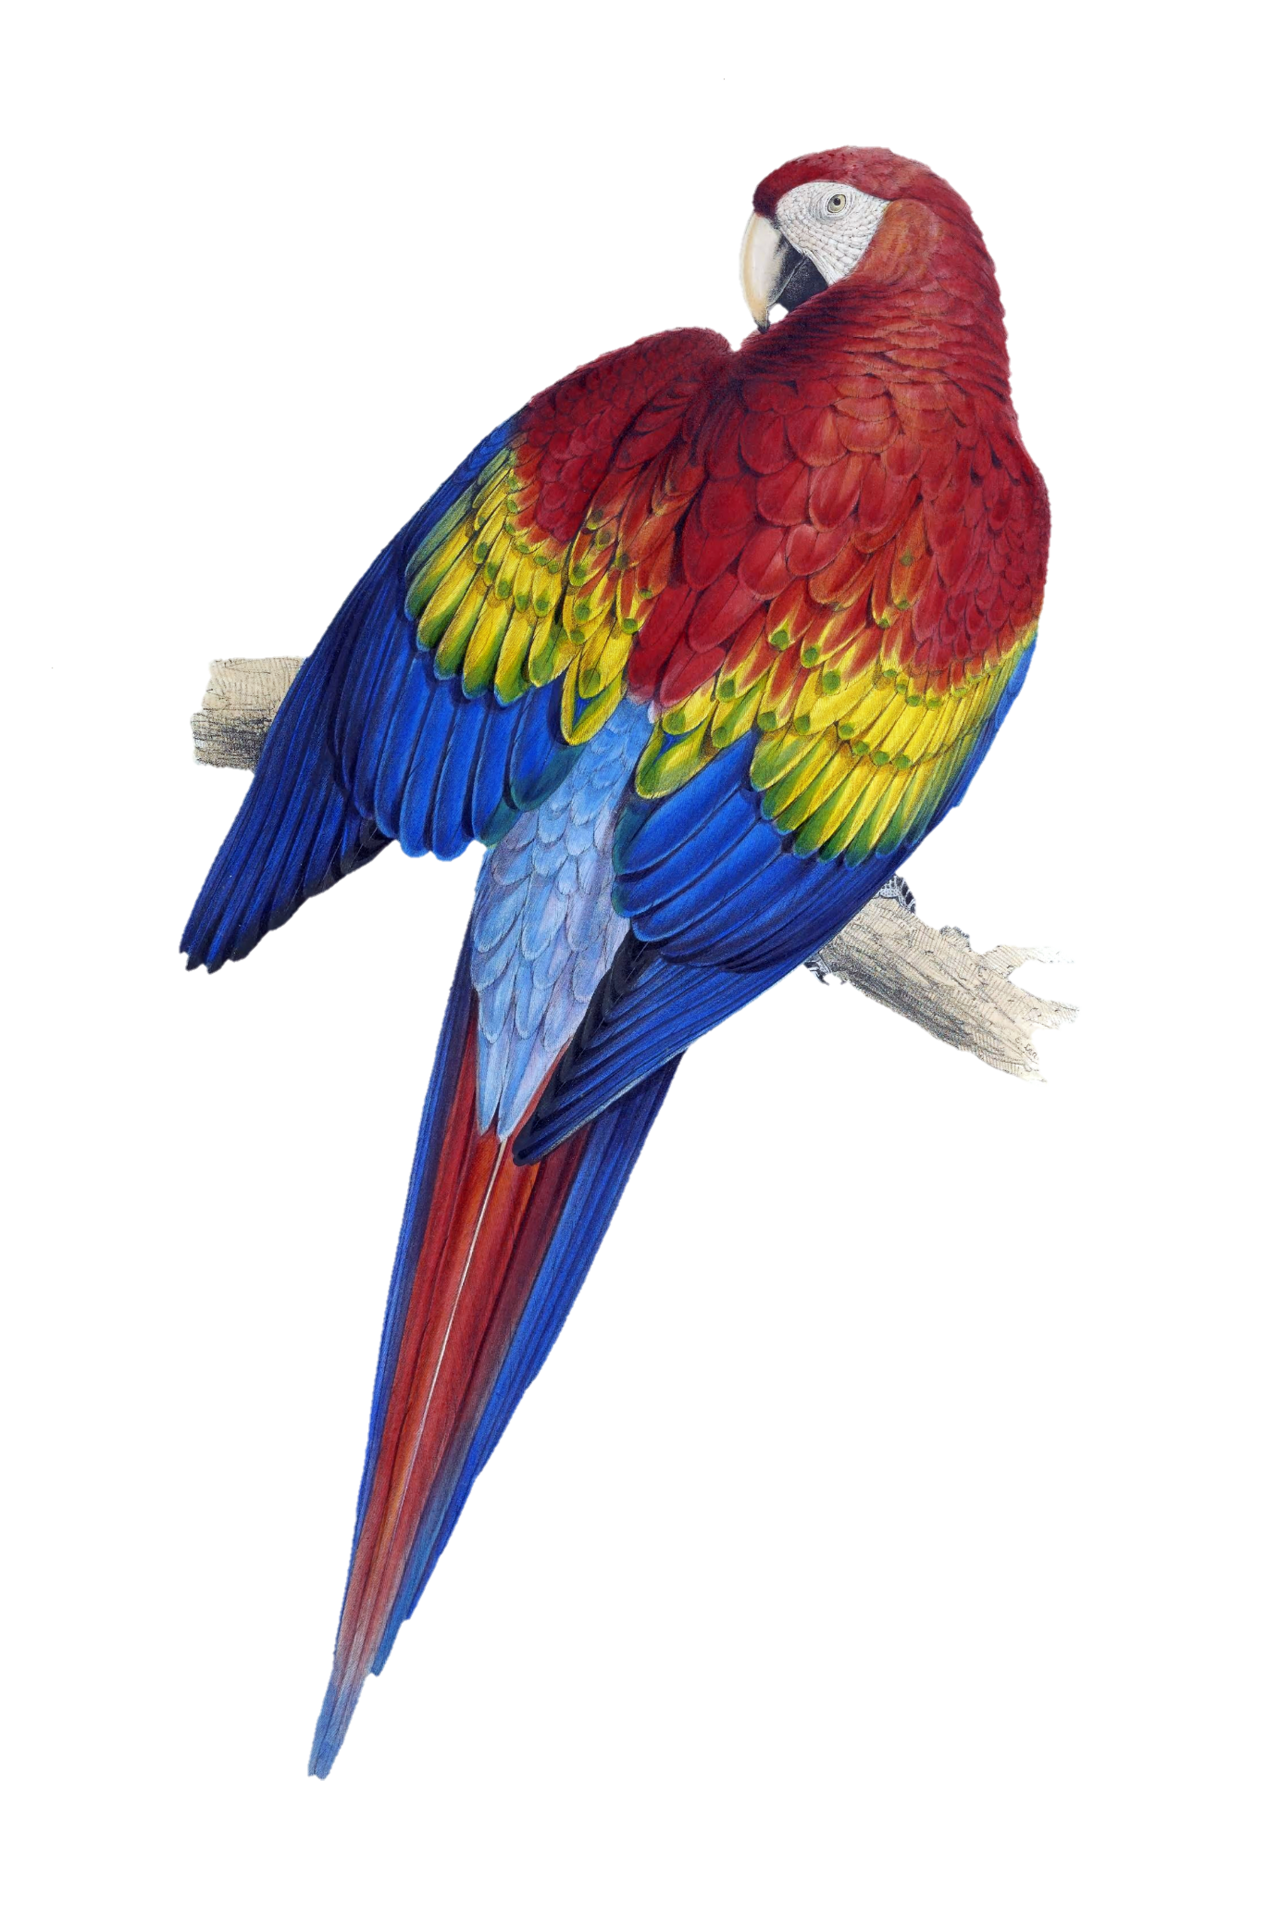 Public domain macaw parrot vintage art illustration old century vintage hand painted antique art